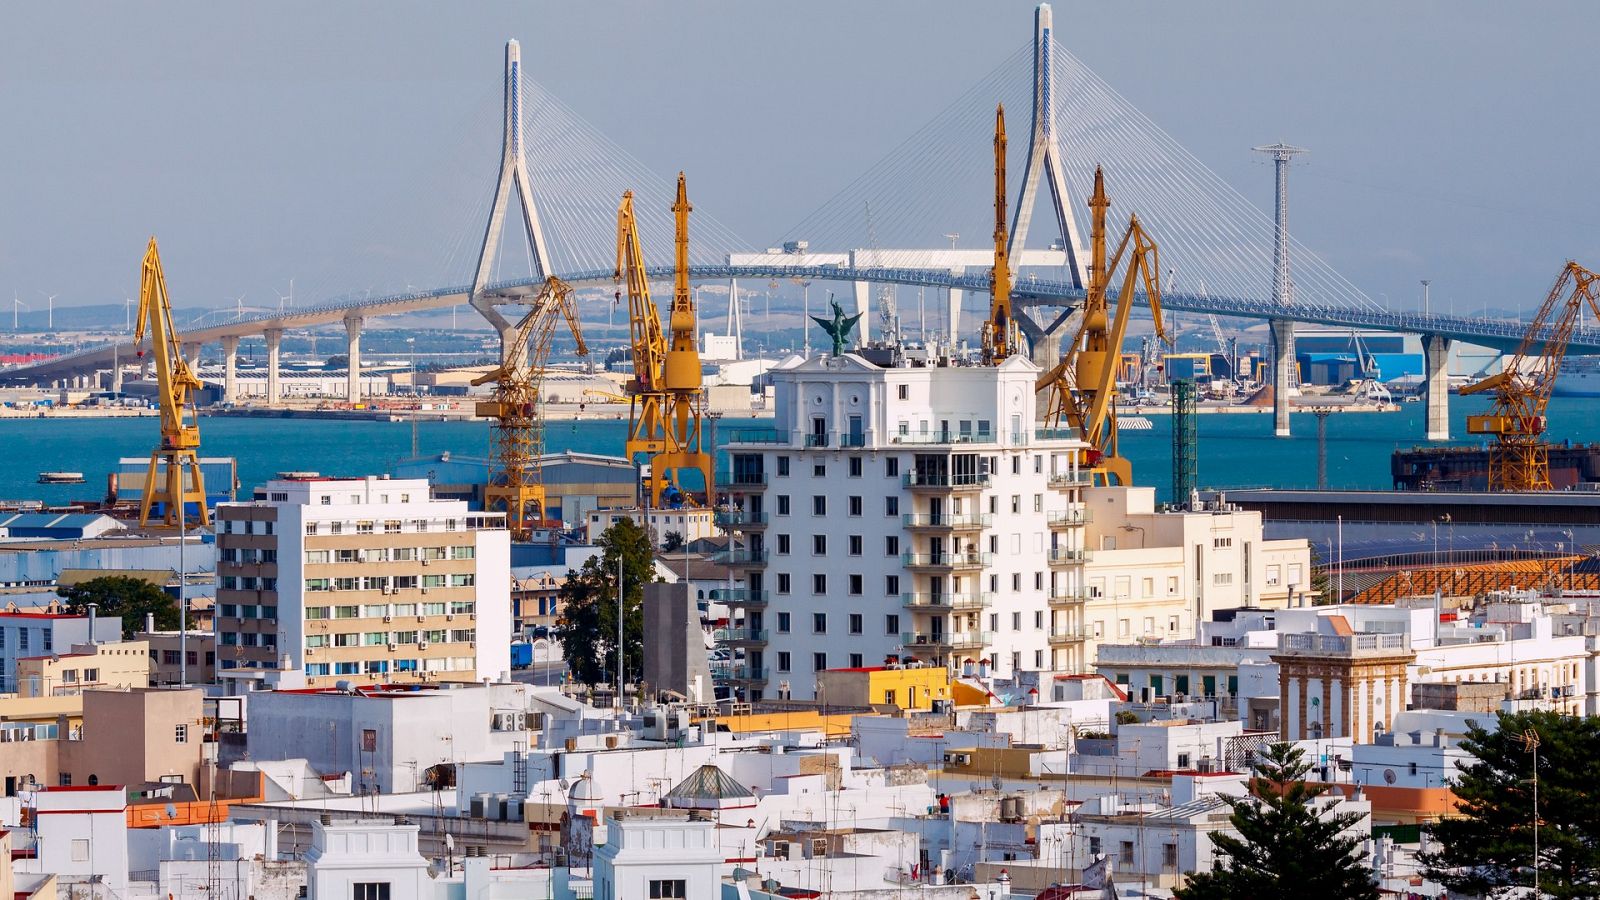 Aprobado el preacuerdo para desconvocar la huelga en Cádiz